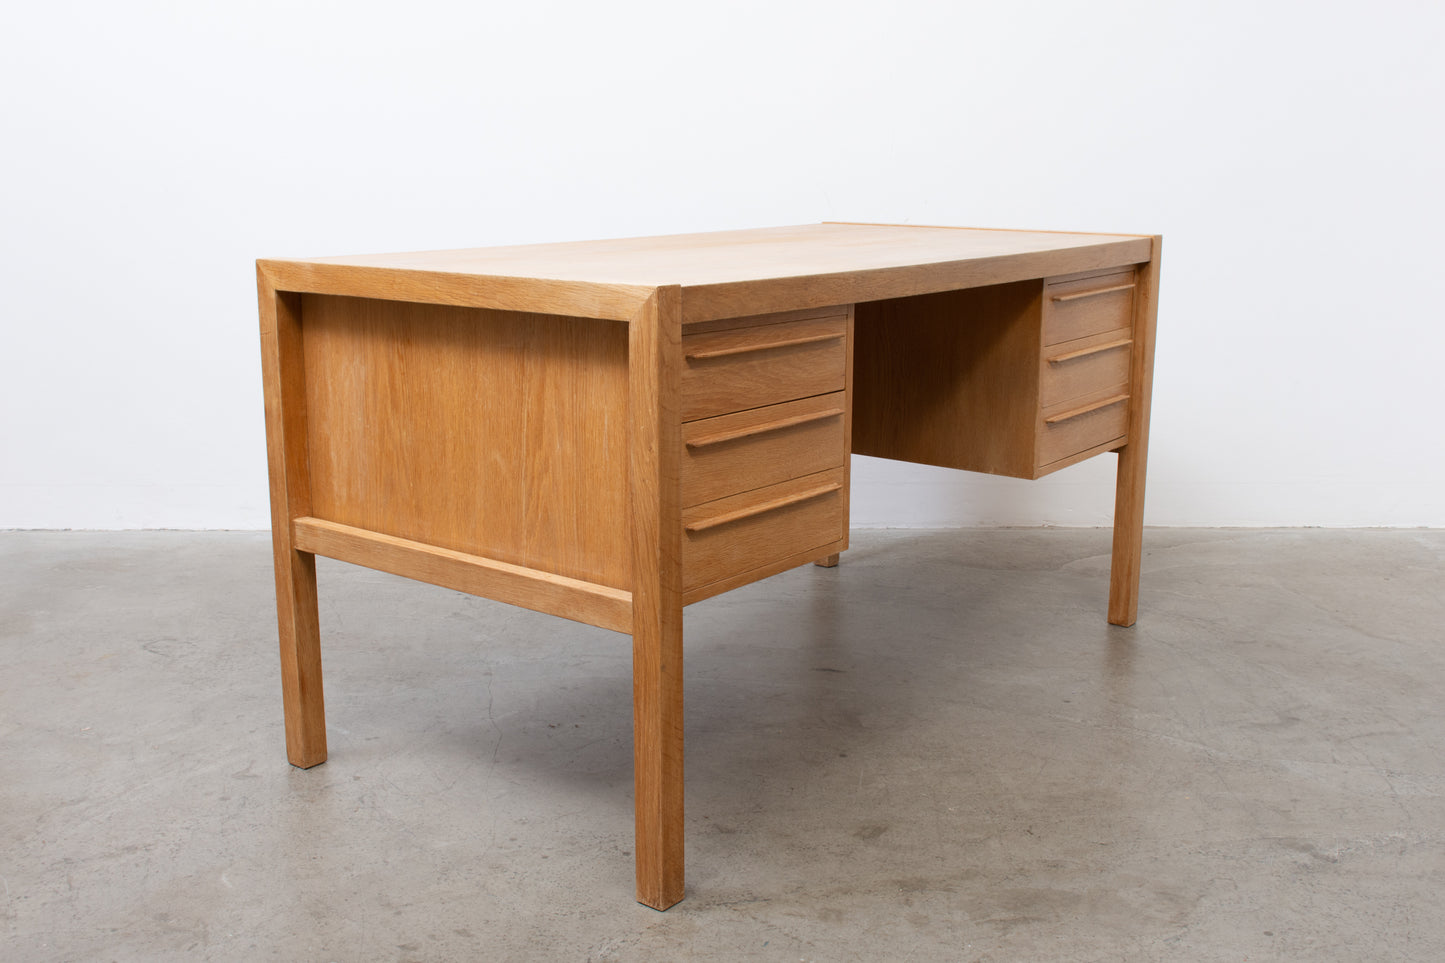 1960s oak desk by Illums Bolighus